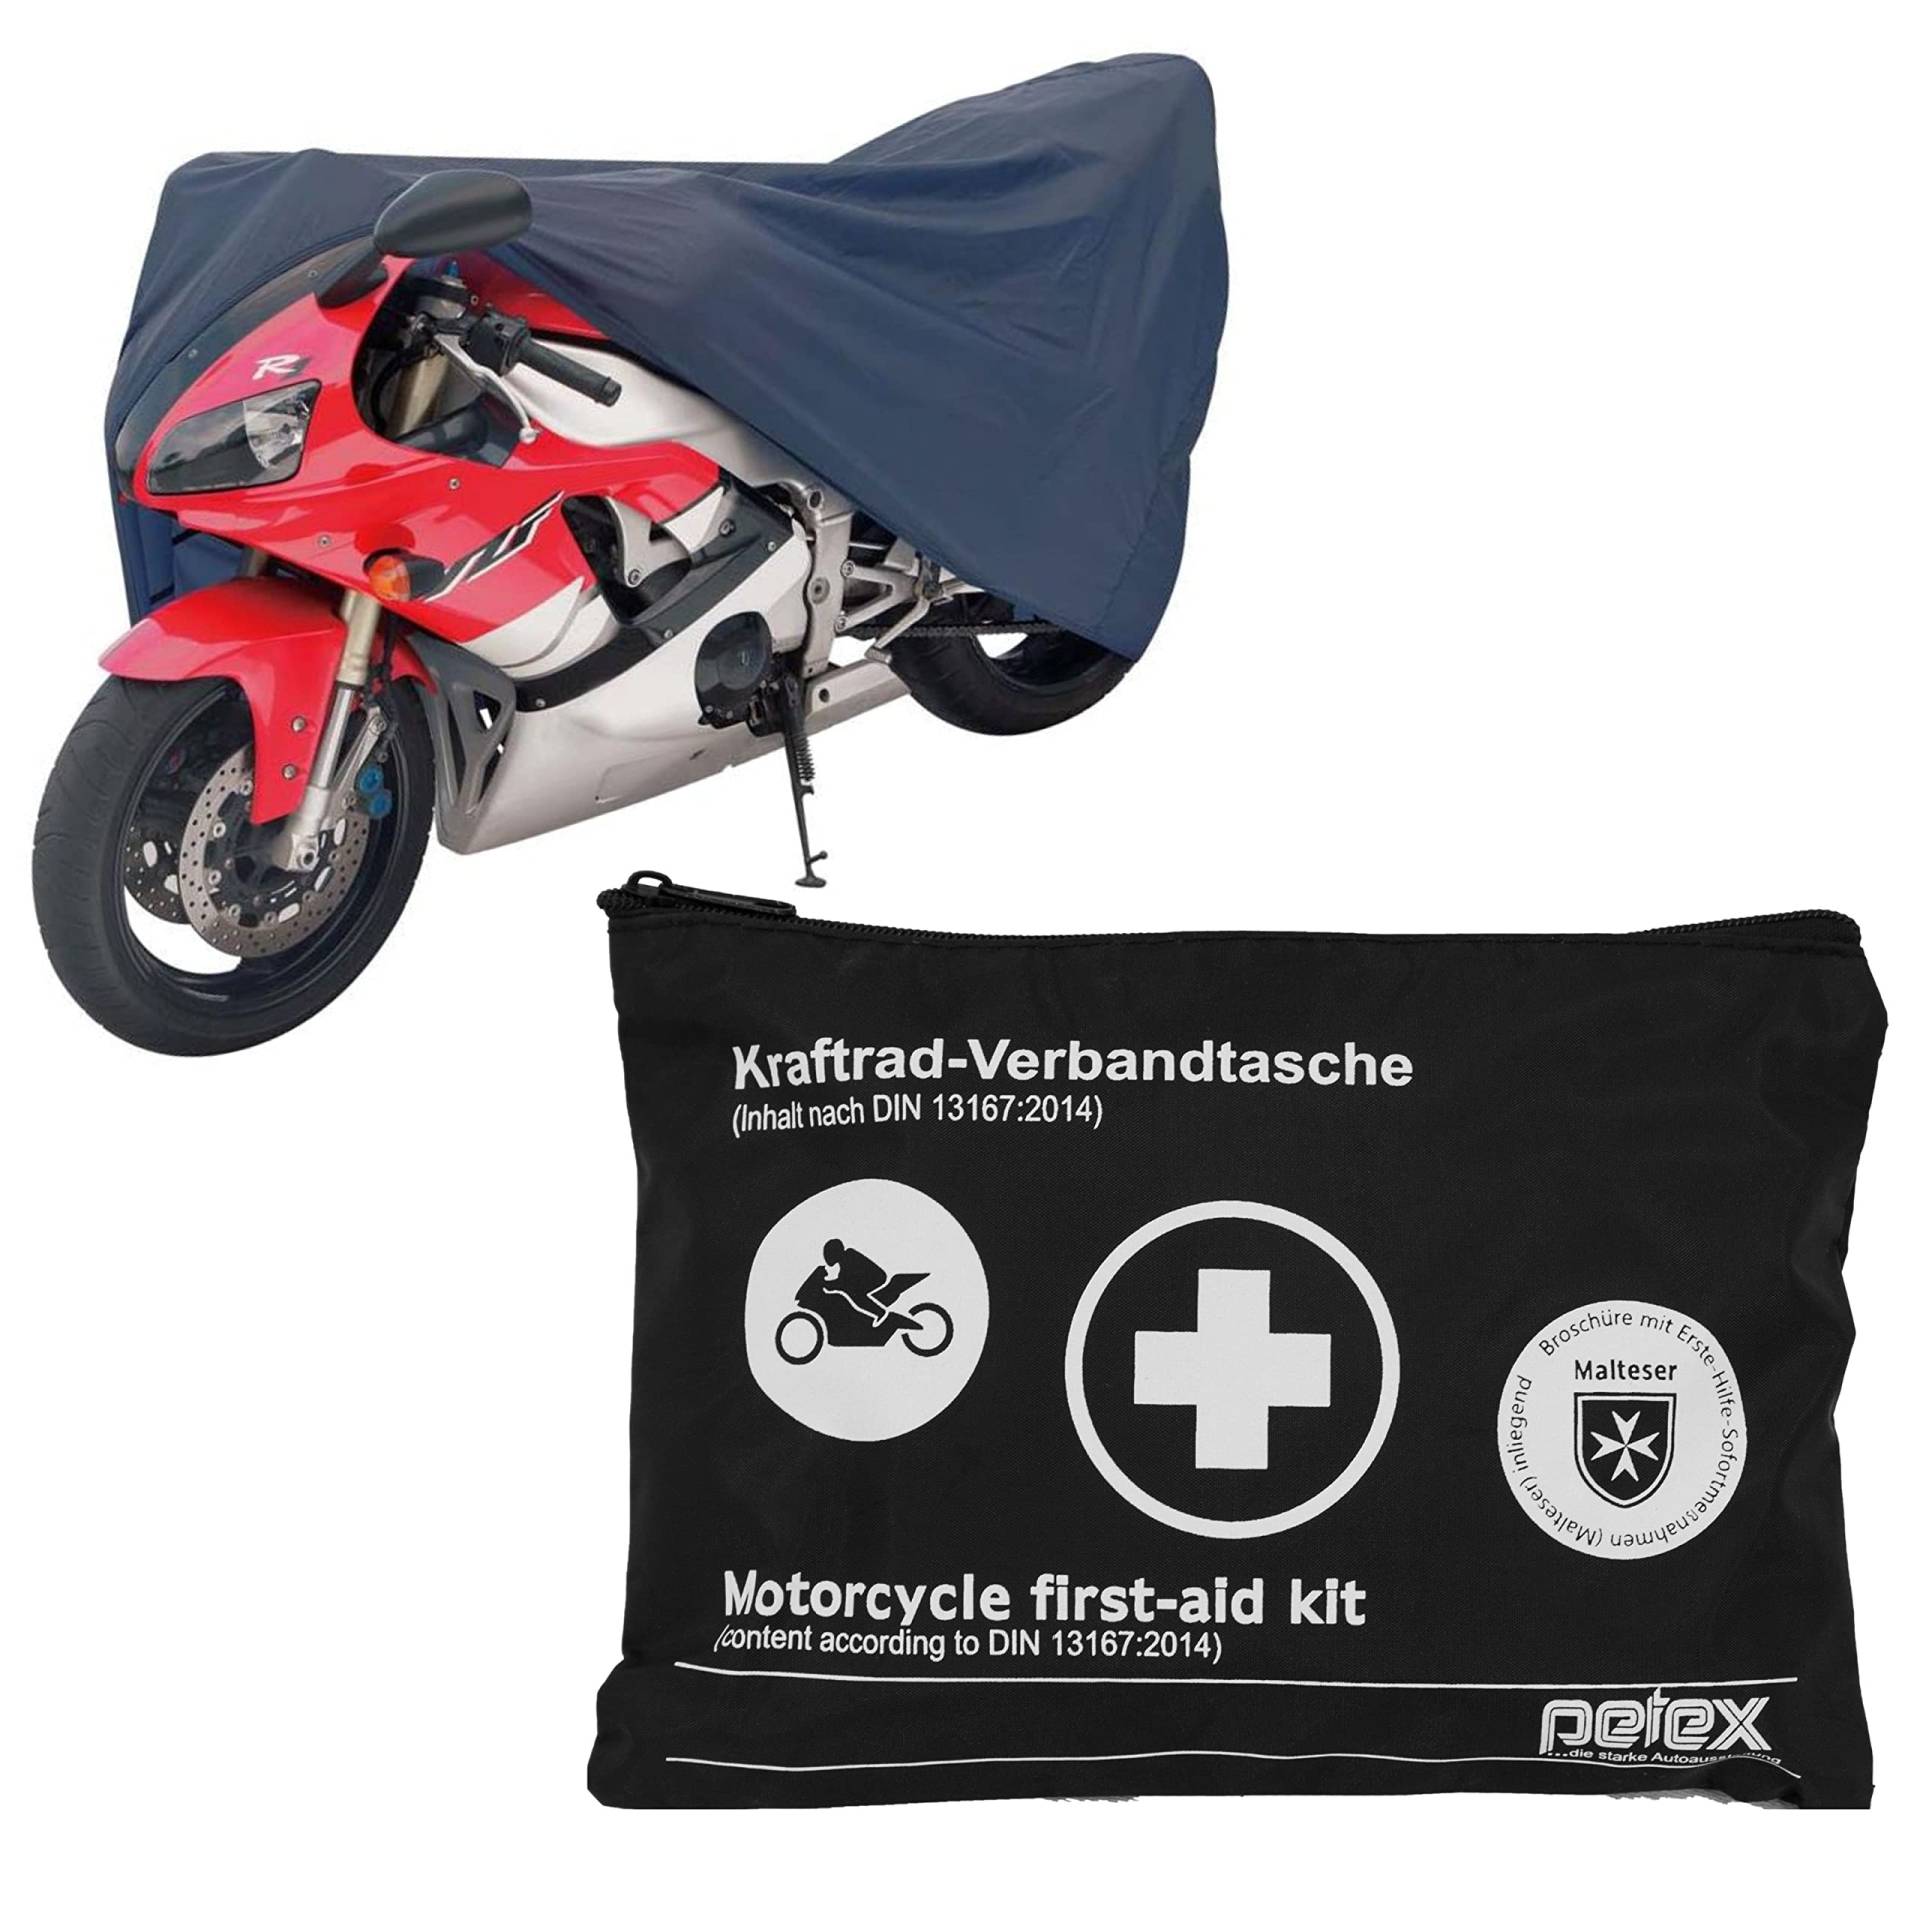 PETEX Motorrad Schutzgarage, Größe M: ca. 203 x 89 x 119 cm, blau und Motorrad Verbandtasche nach DIN 13167, schwarz - Set von PETEX